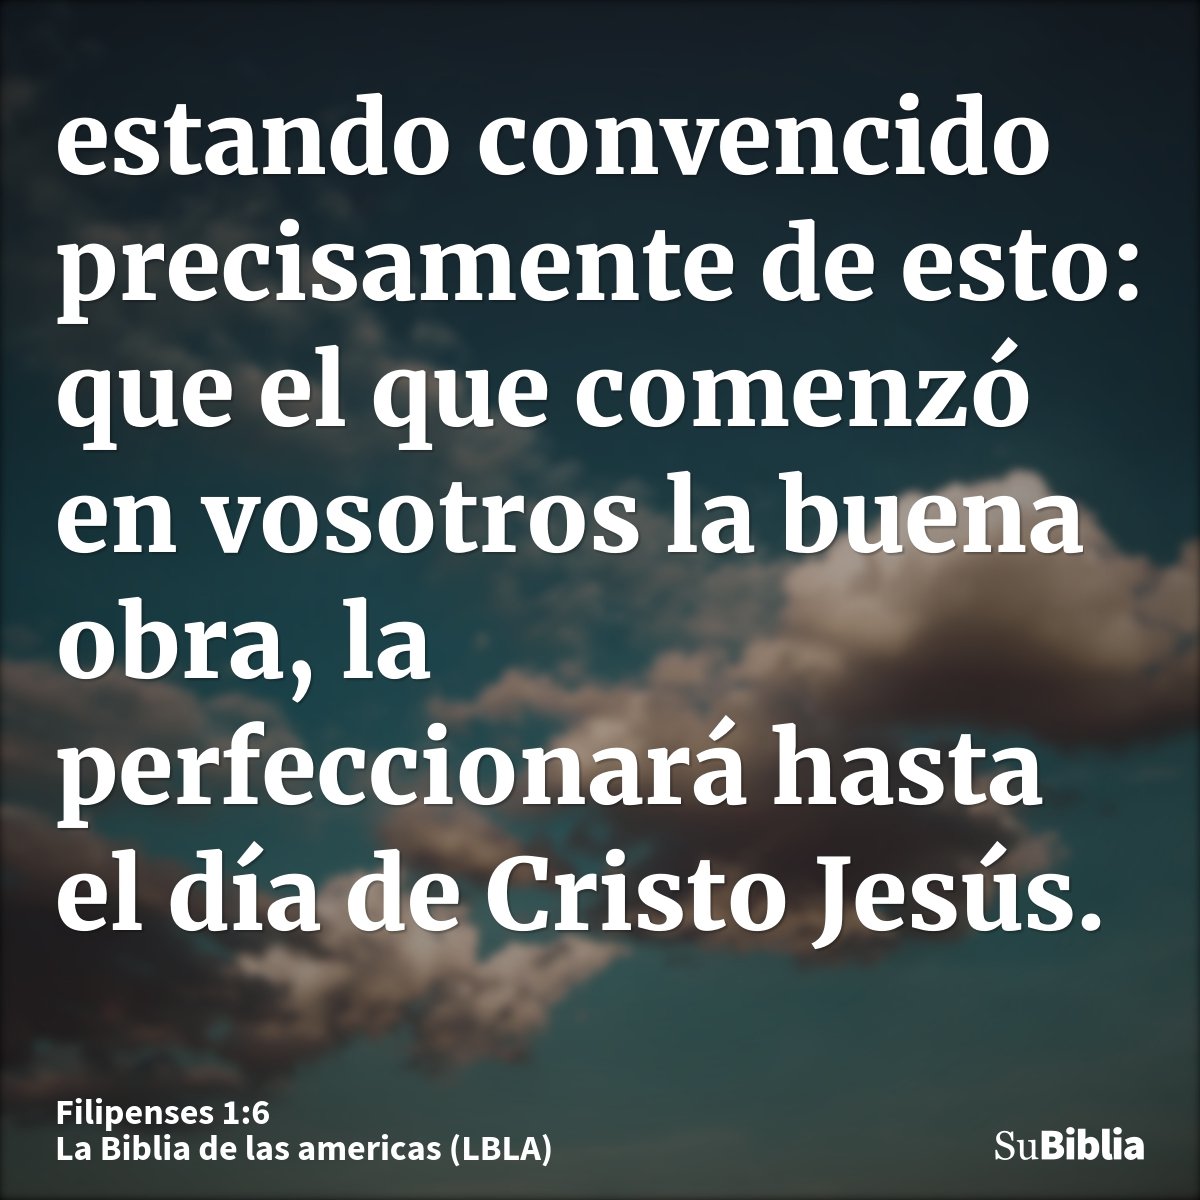 estando convencido precisamente de esto: que el que comenzó en vosotros la buena obra, la perfeccionará hasta el día de Cristo Jesús.